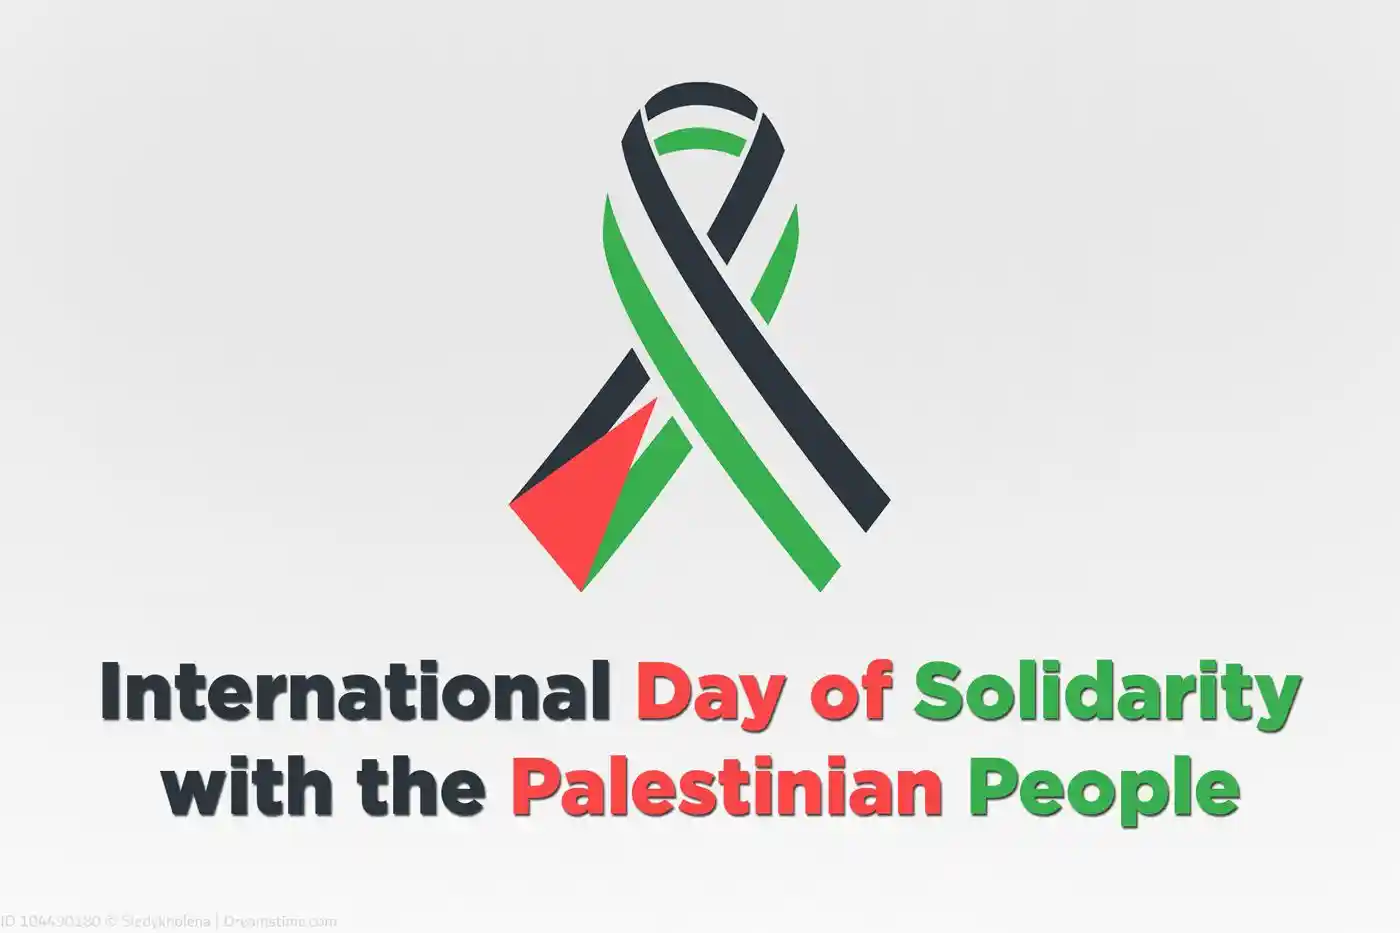 फिलीस्तीनी लोगों के साथ एकजुटता का अंतर्राष्ट्रीय दिवस ; Image Source: prc.org.uk